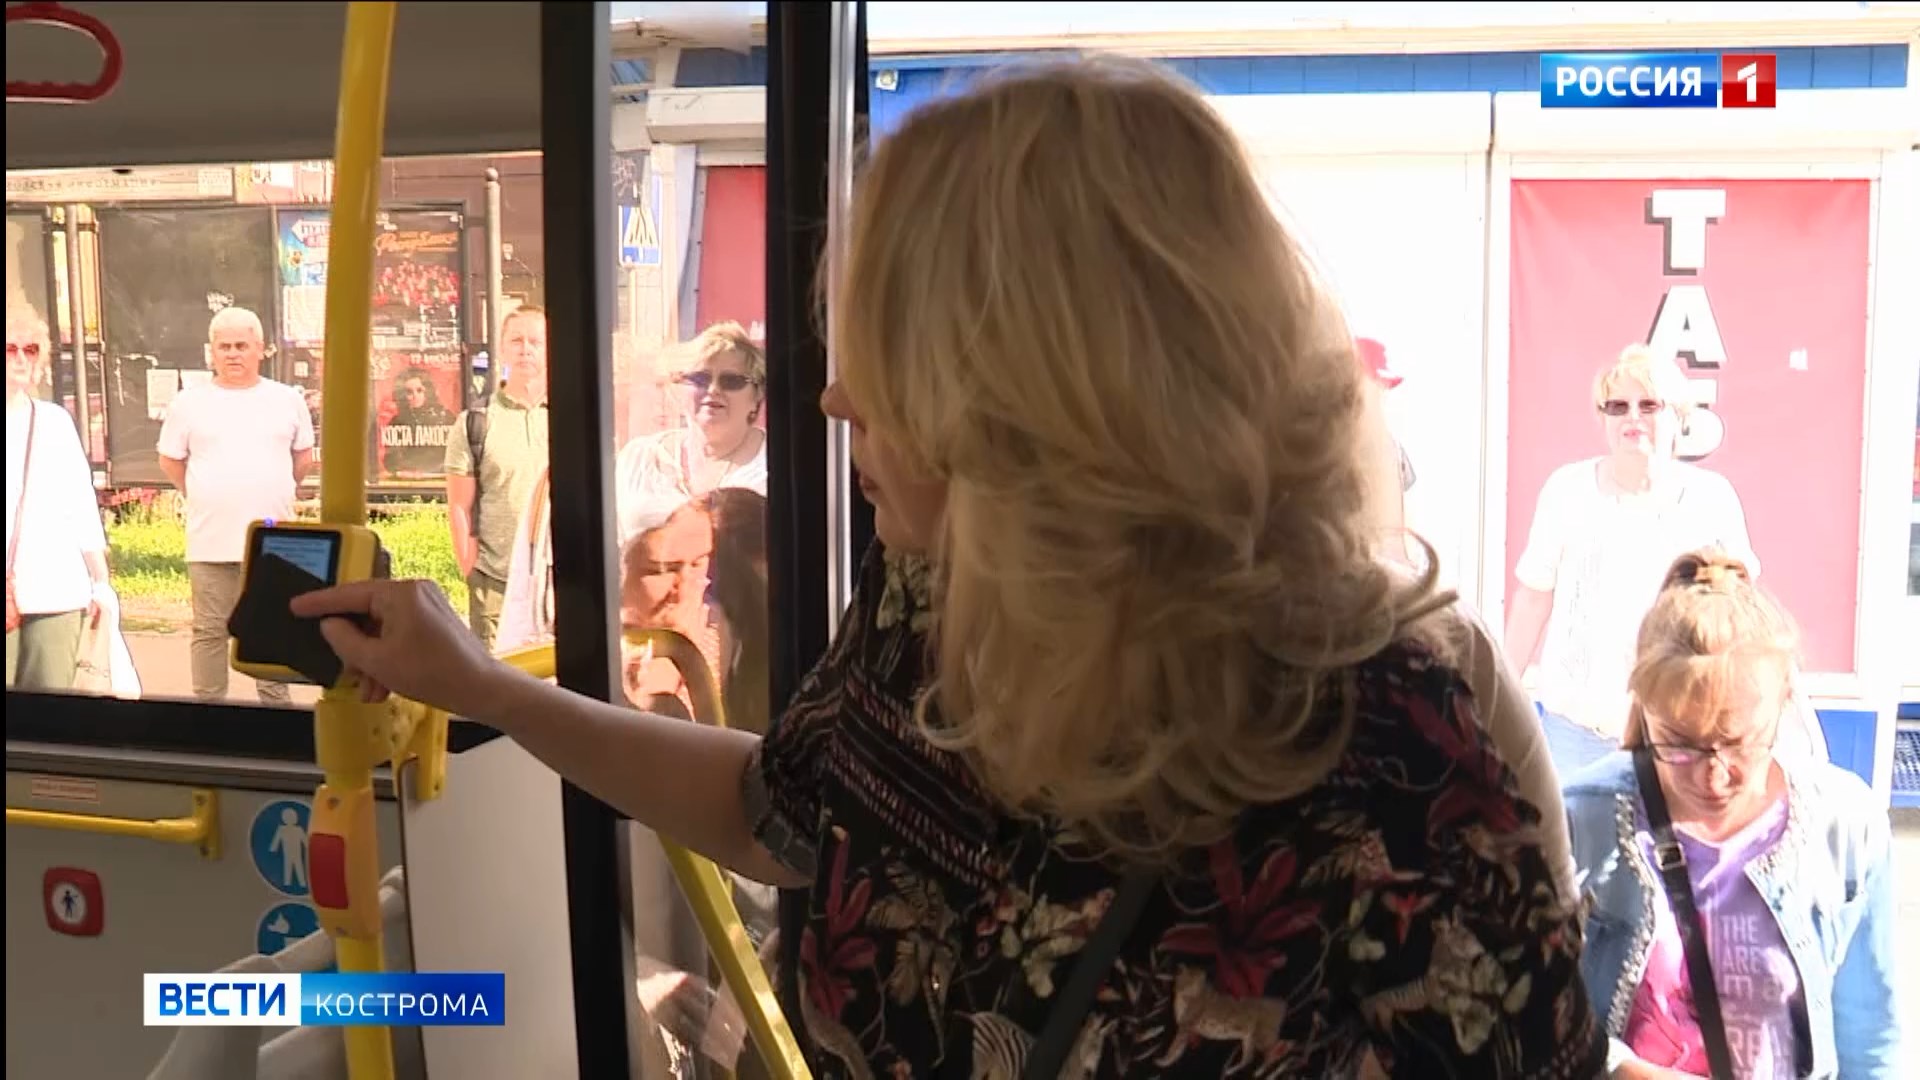 В Костроме увеличили время бесплатной пересадки в автобусах до 60 минут